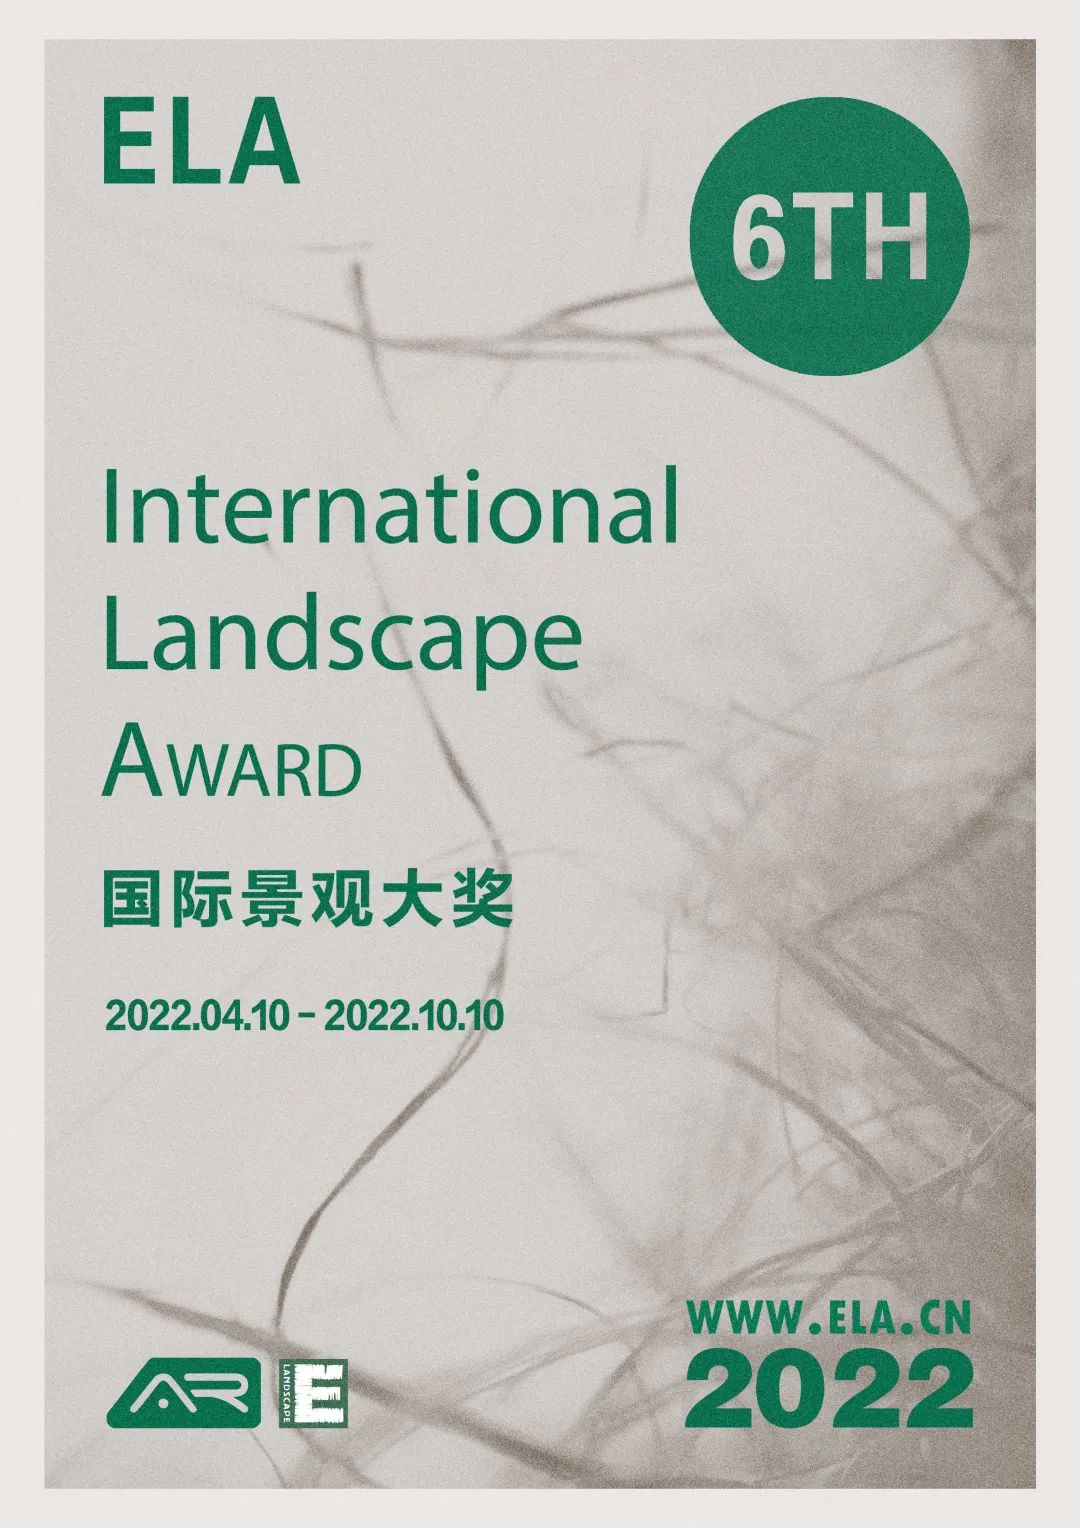 2022年度中国十大景观项目暨第六届ELA国际景观大奖正在申报中